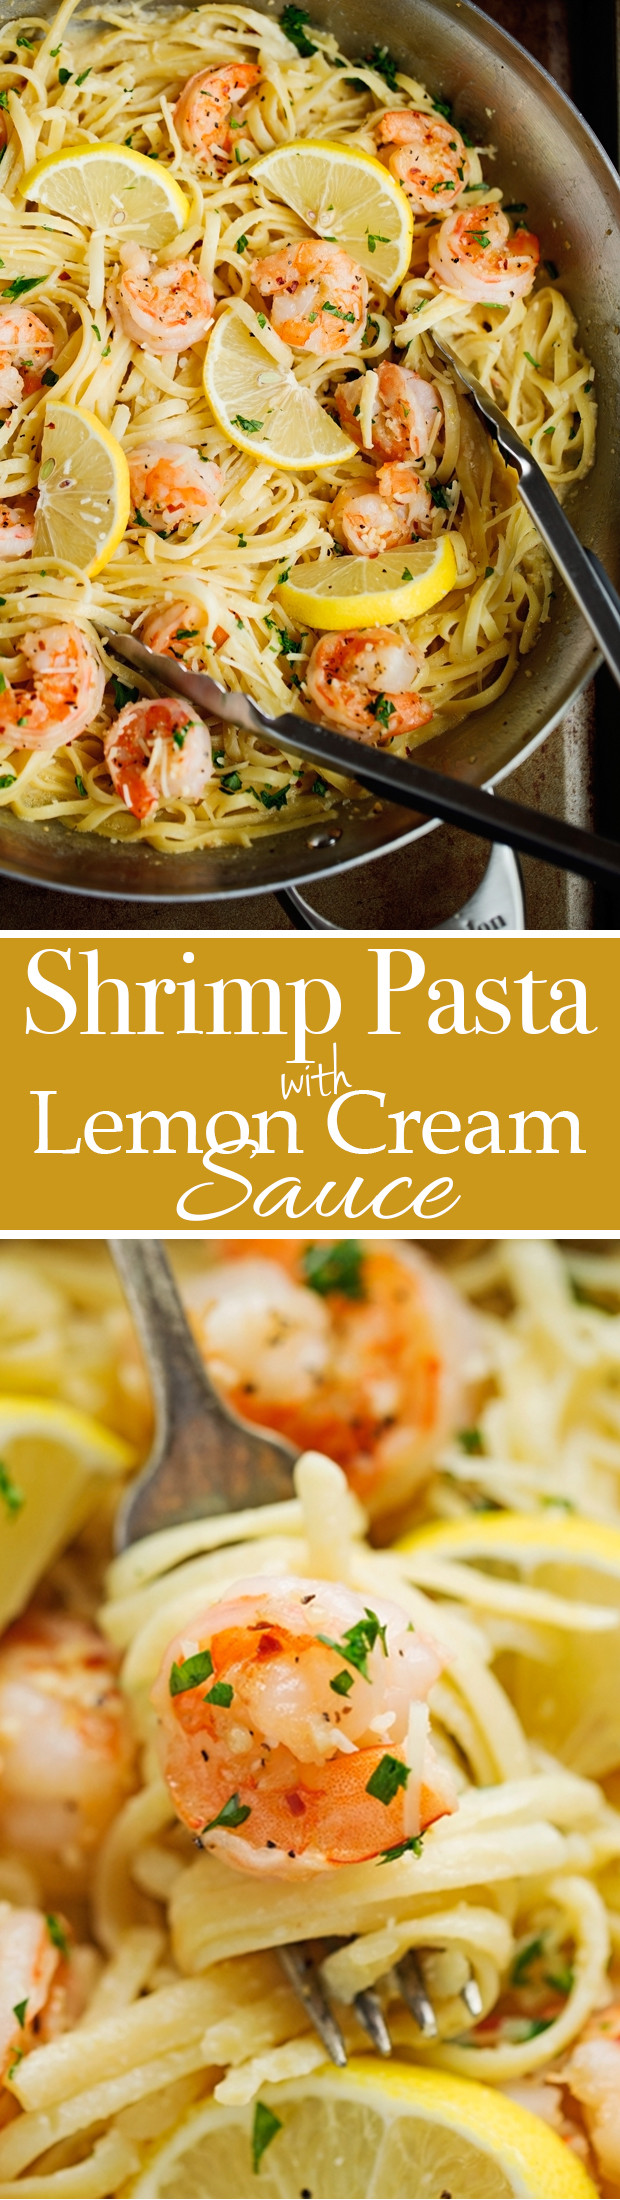 Shrimp Pasta Cream Sauce
 Shrimp Pasta with Lemon Cream Sauce